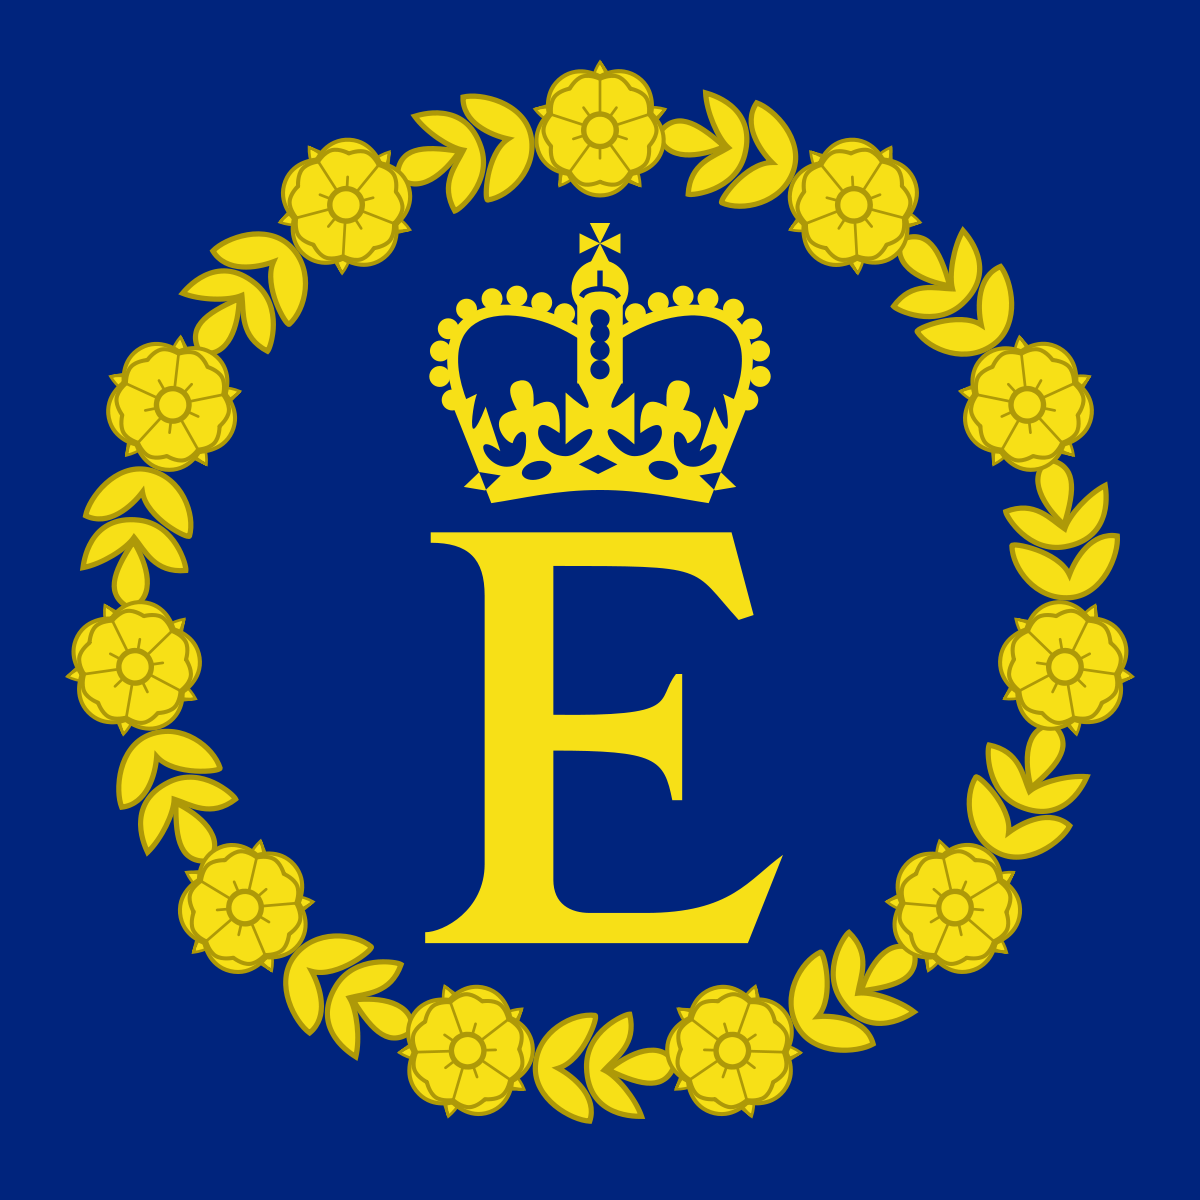 Wappen Elizabeth Ii - KibrisPDR